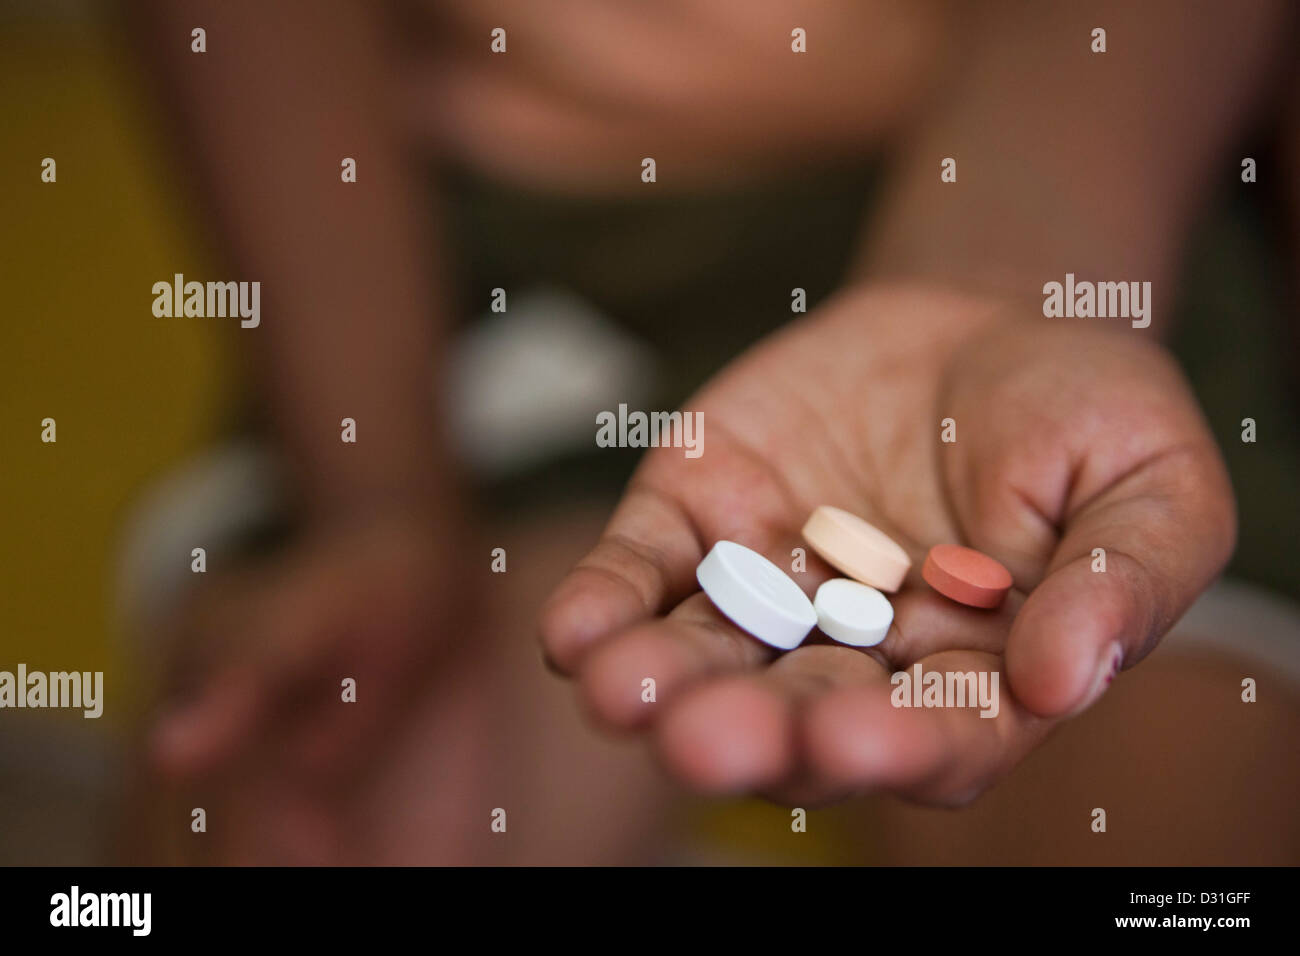 Indisches Kind erhält ihre täglichen Medikamente Tabletten für Tuberkulose (TB), die sind verzichtet wird. Delhi, Indien Stockfoto